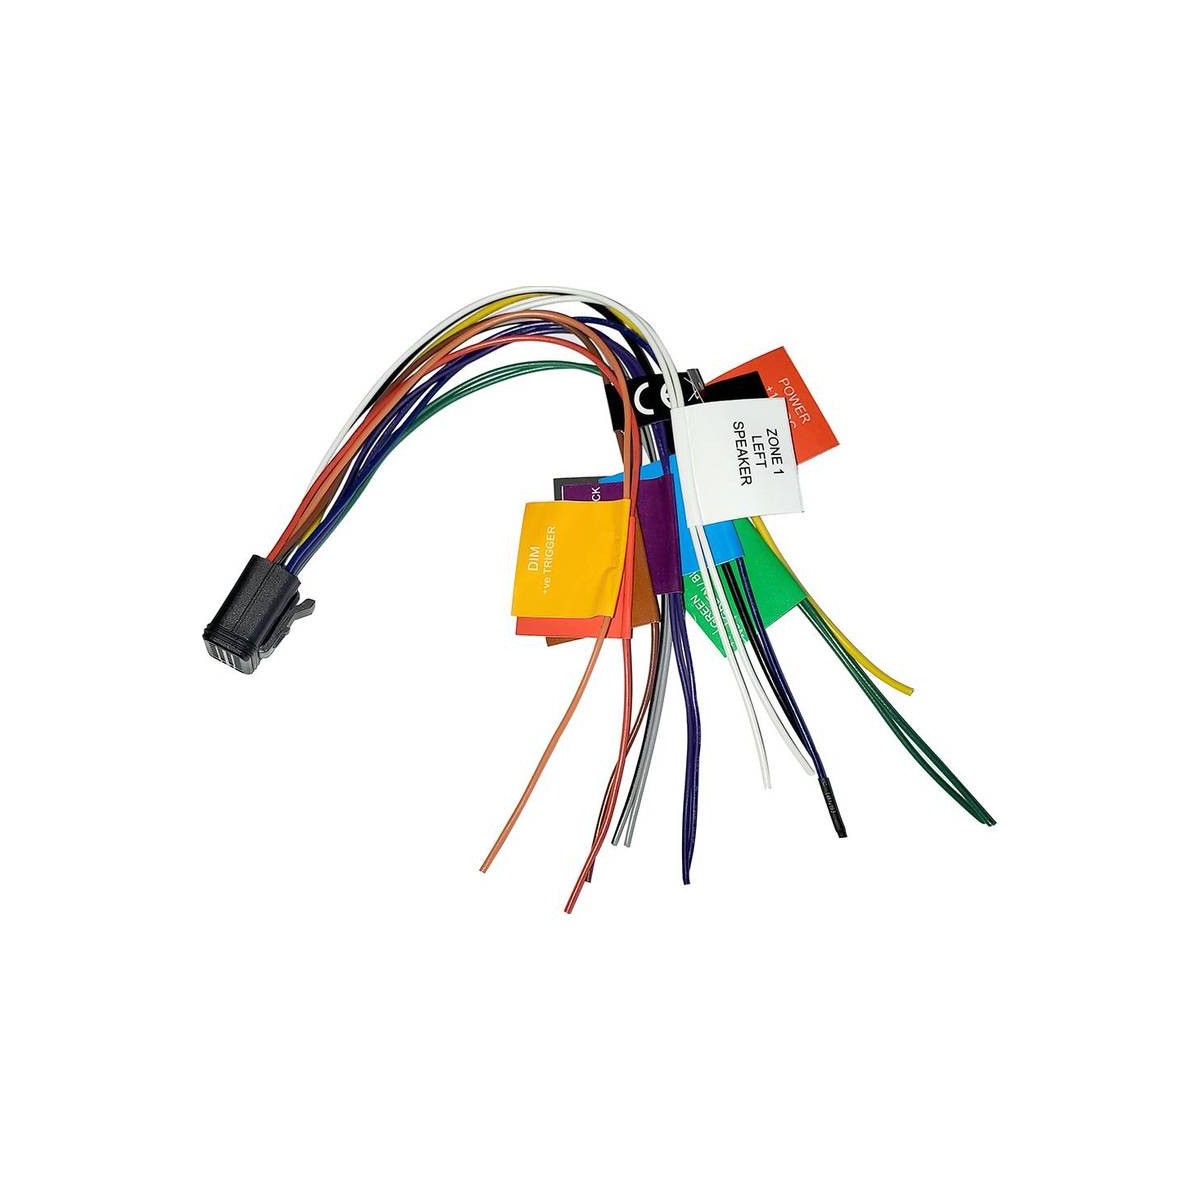 Câble d'alimentation/haut-parleur pour stéréos MS-RA670/MS-RA770